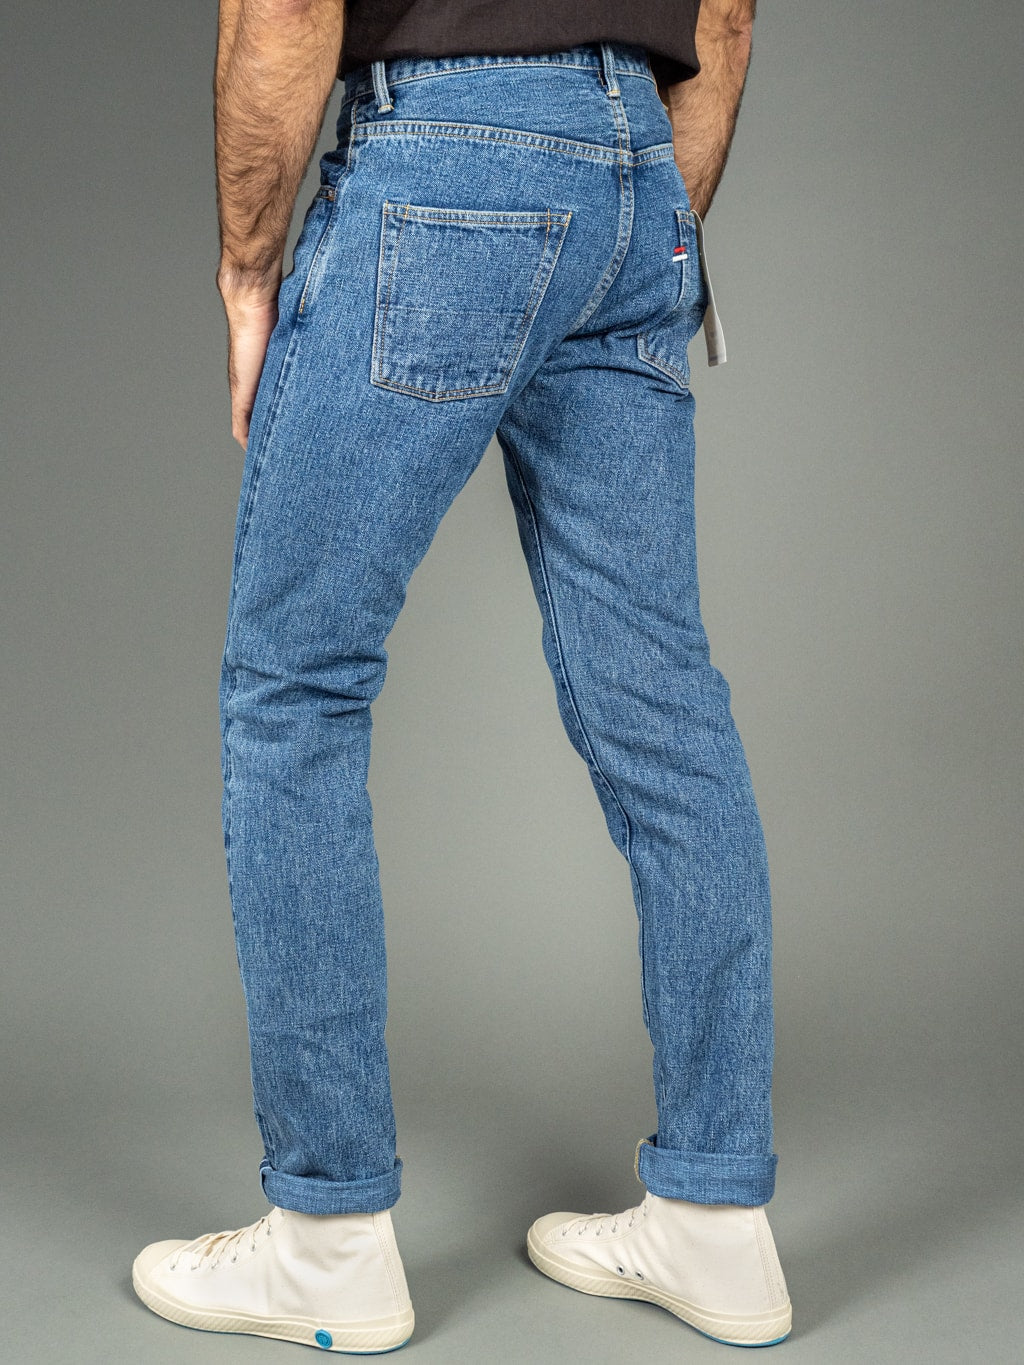 Tanuki Yurai Stonewash High Tapered Jeans Fit